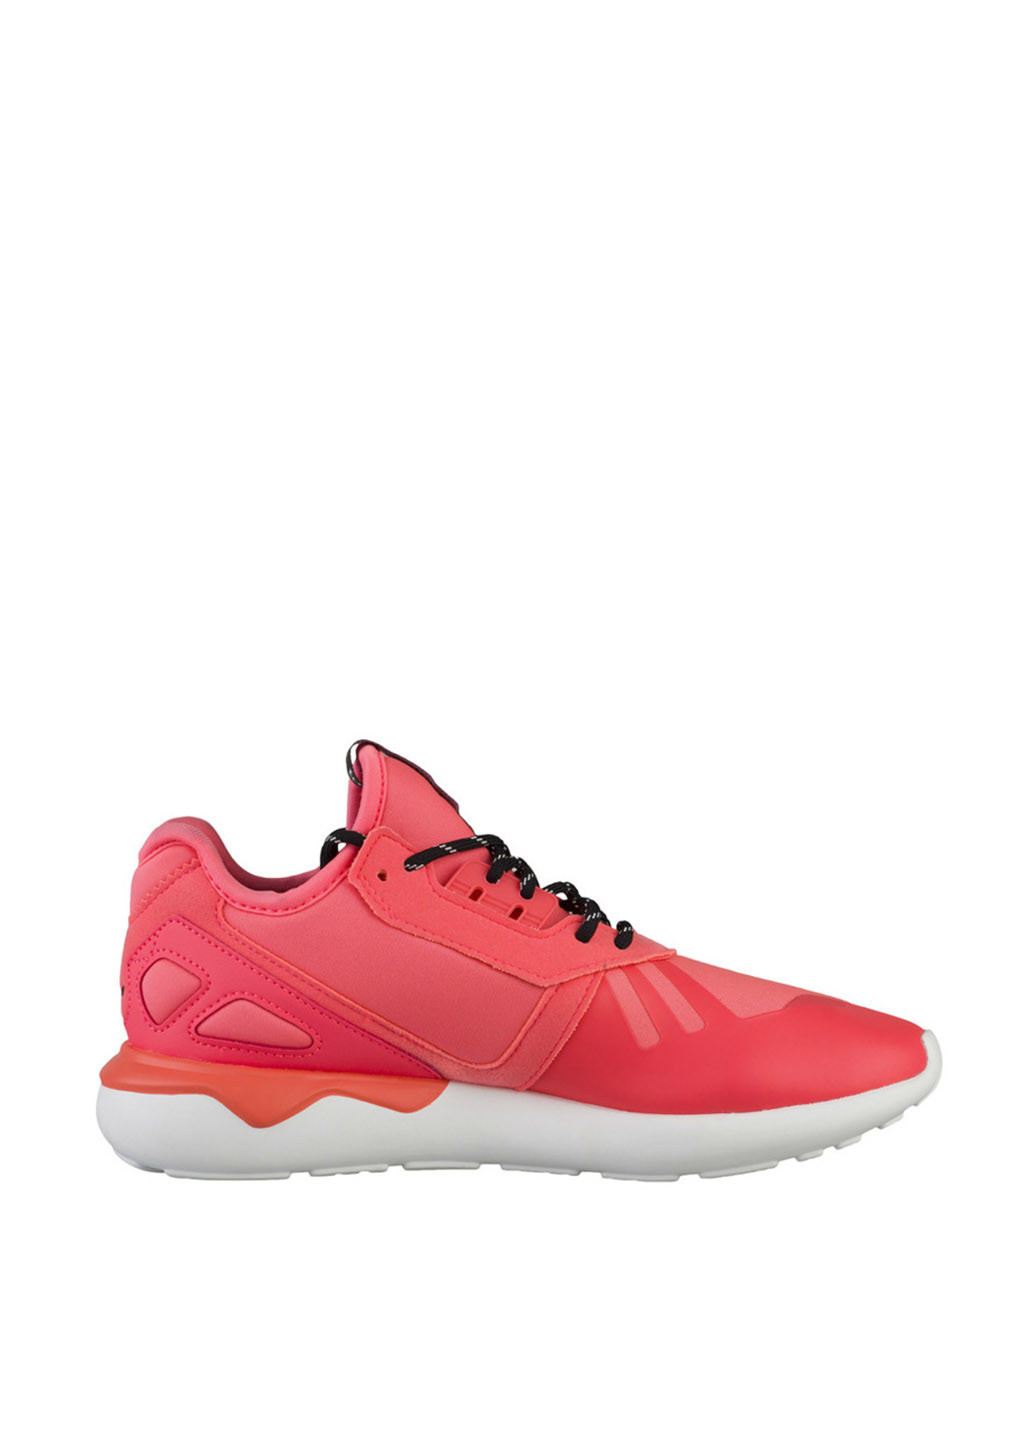 Розовые всесезонные кроссовки adidas